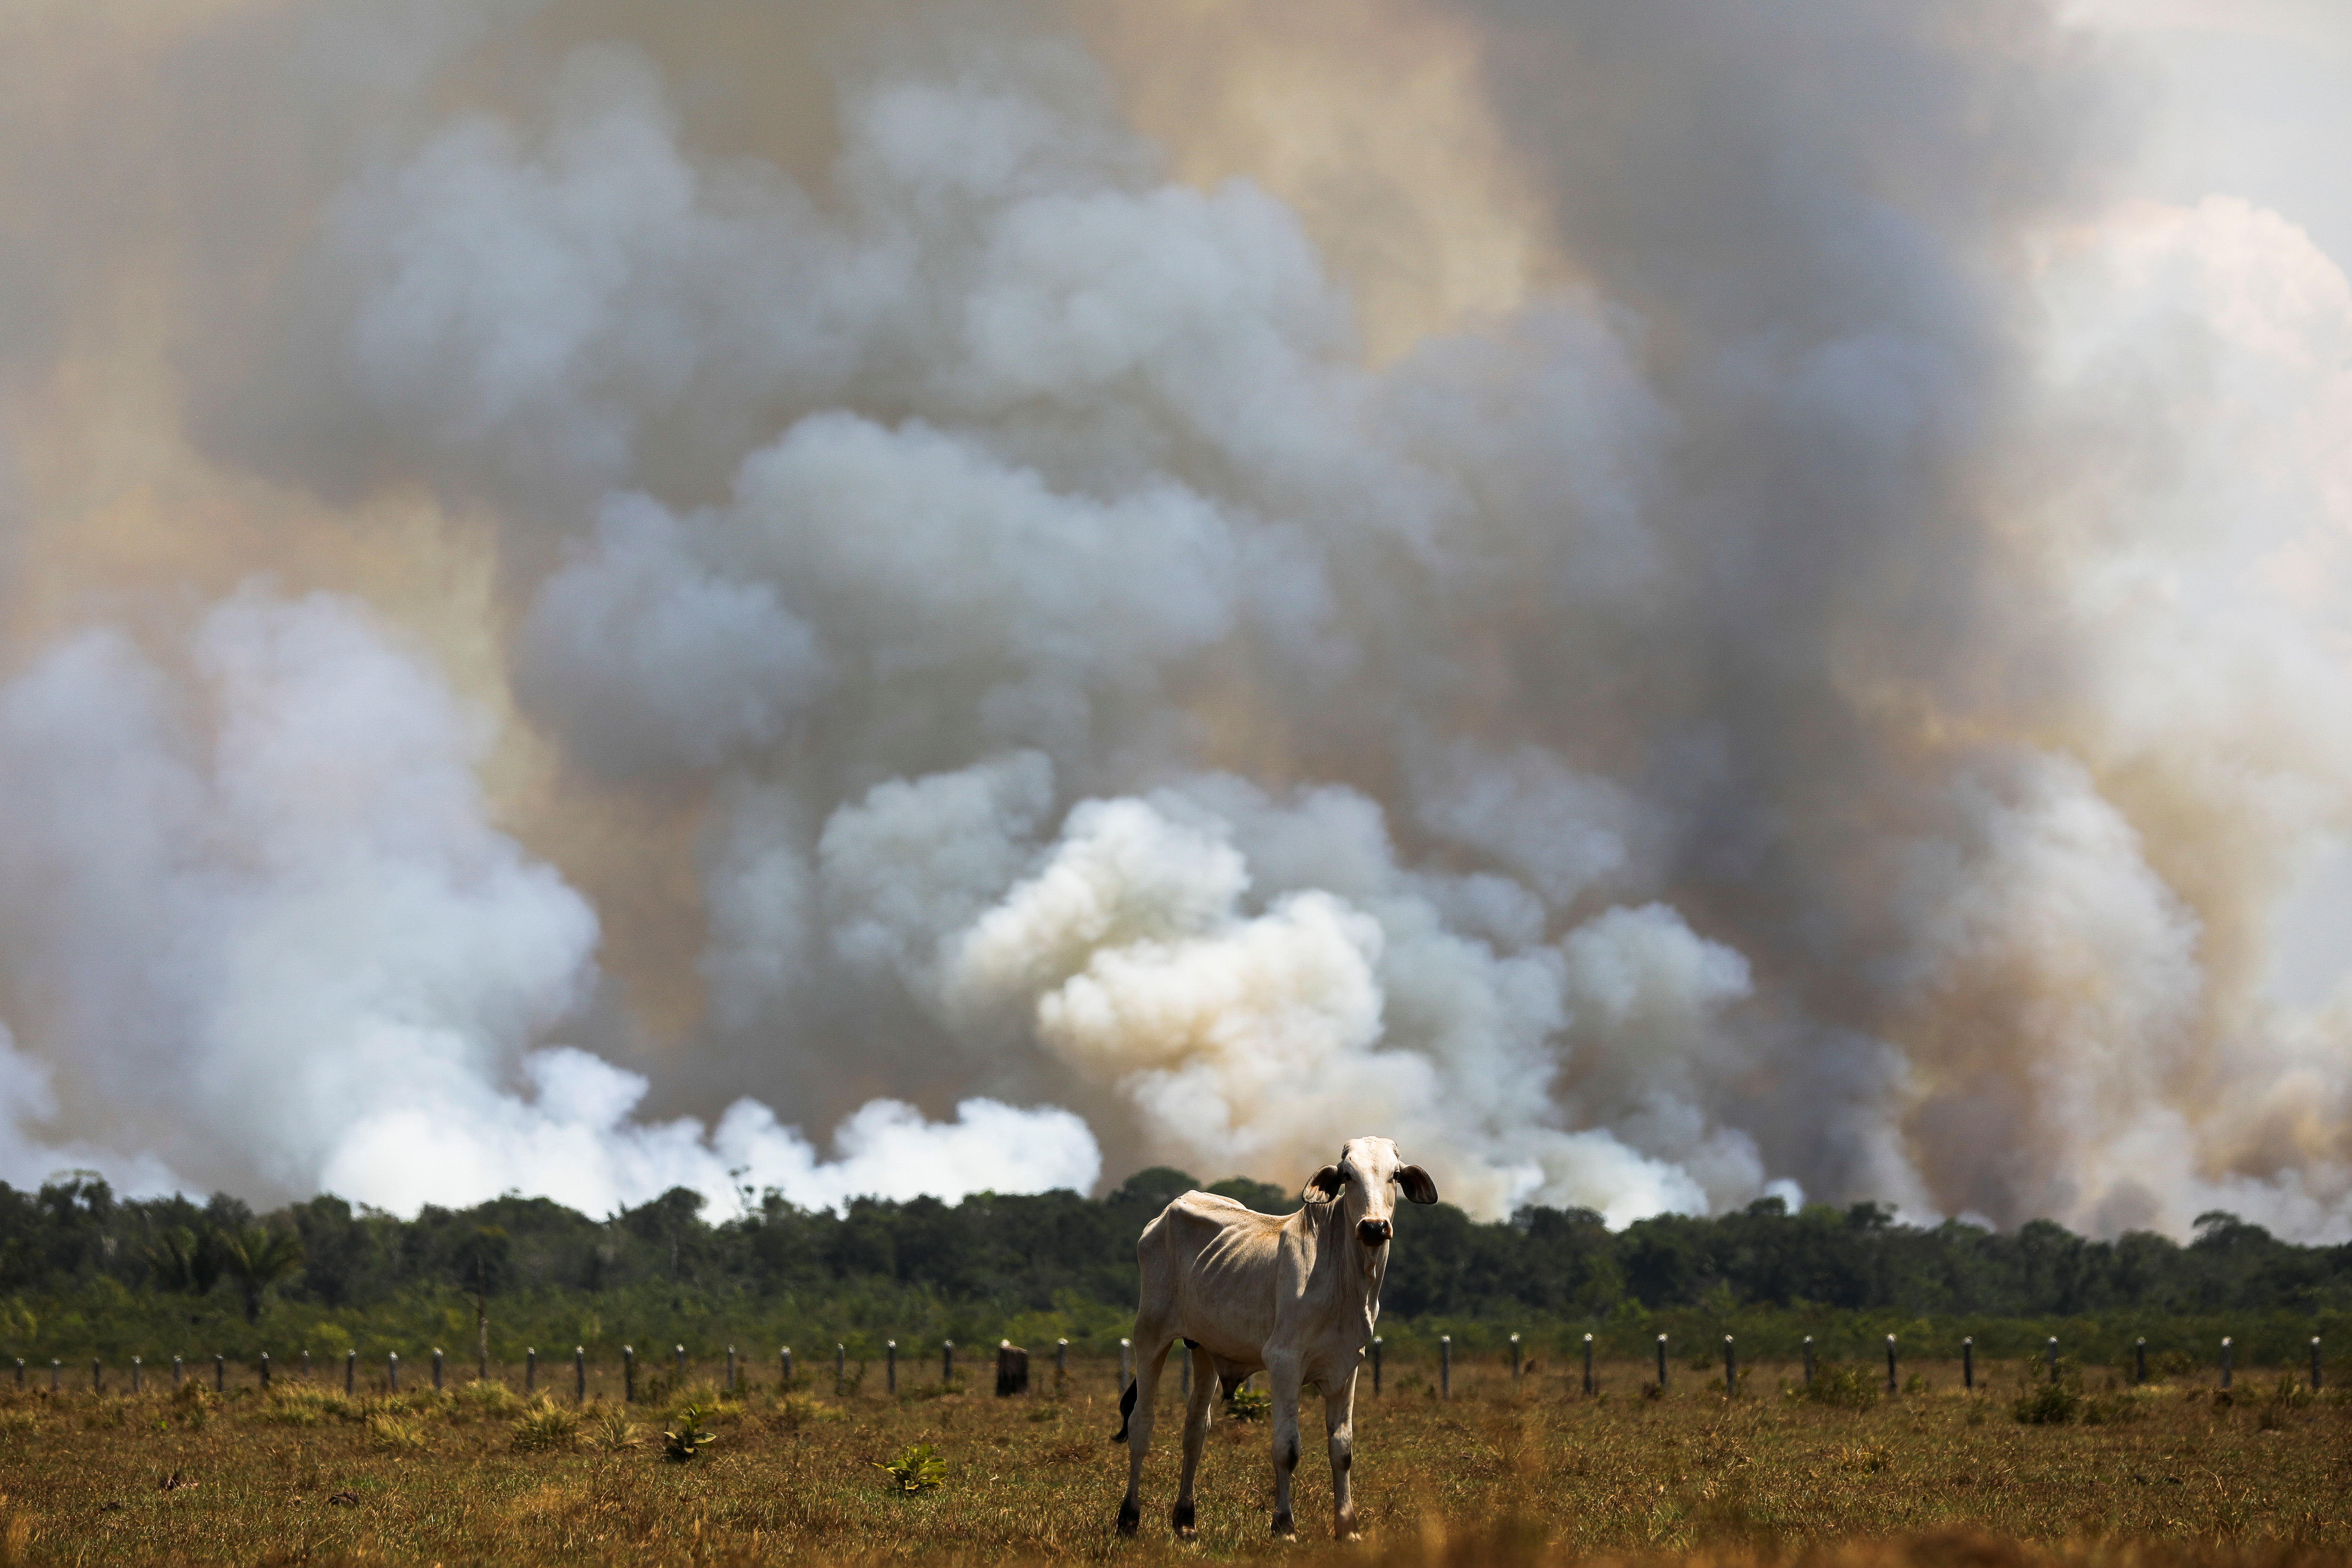 Brazil releases data on Amazon rainforest destruction for August